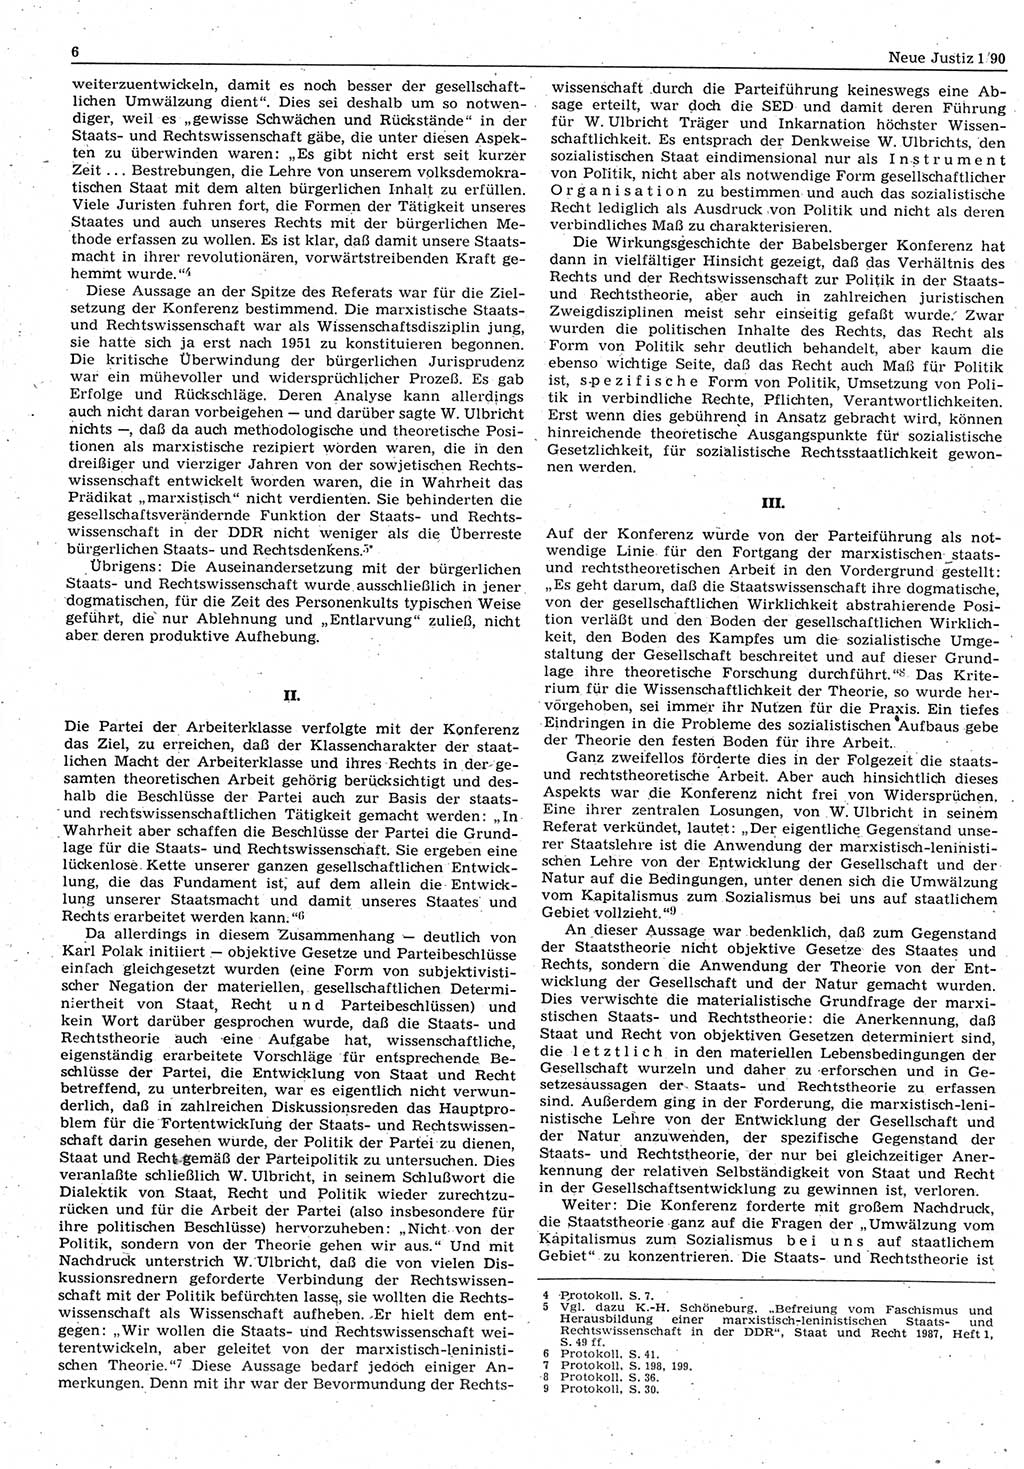 Neue Justiz (NJ), Zeitschrift für Rechtsetzung und Rechtsanwendung [Deutsche Demokratische Republik (DDR)], 44. Jahrgang 1990, Seite 6 (NJ DDR 1990, S. 6)